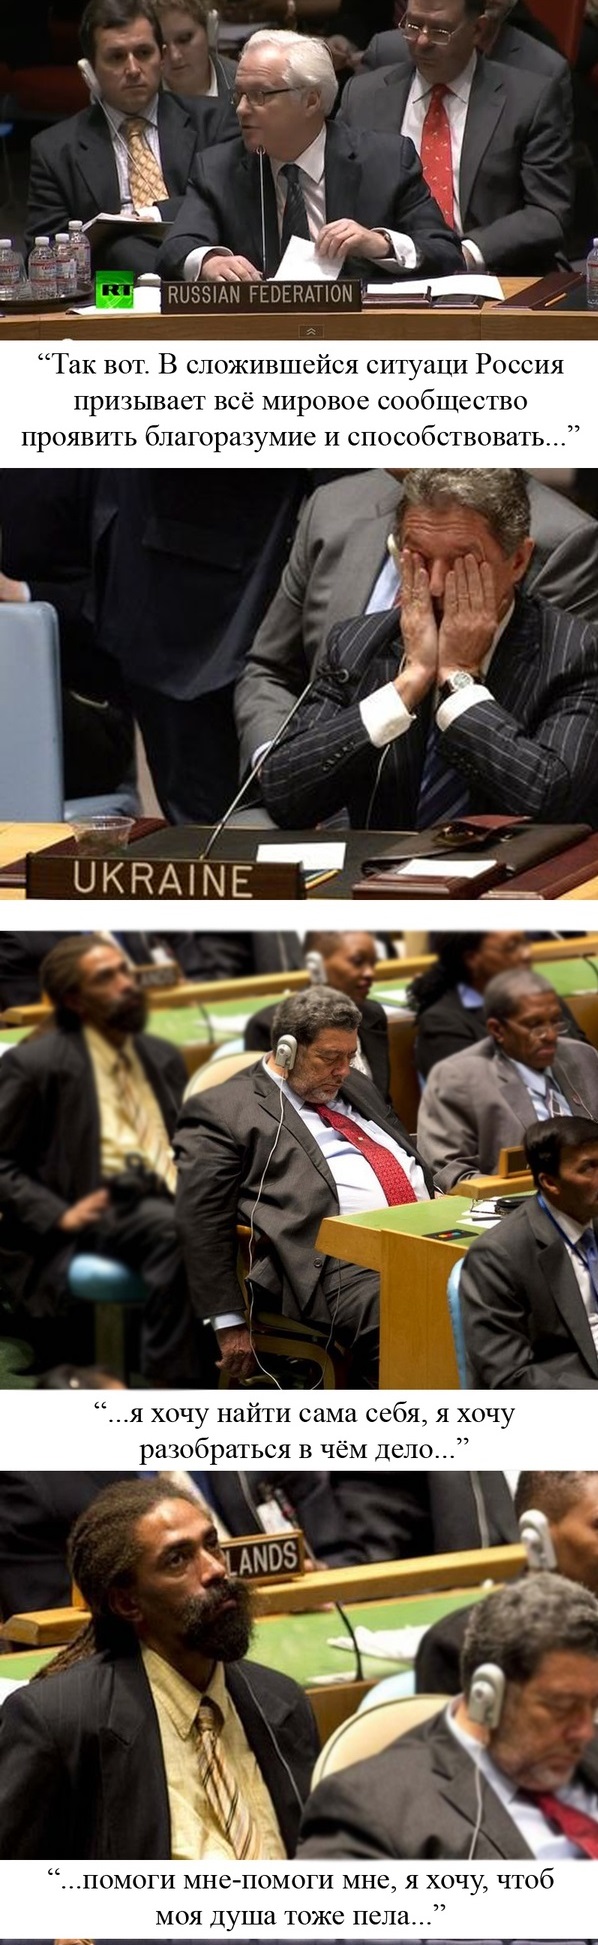 Типичный день в ООН